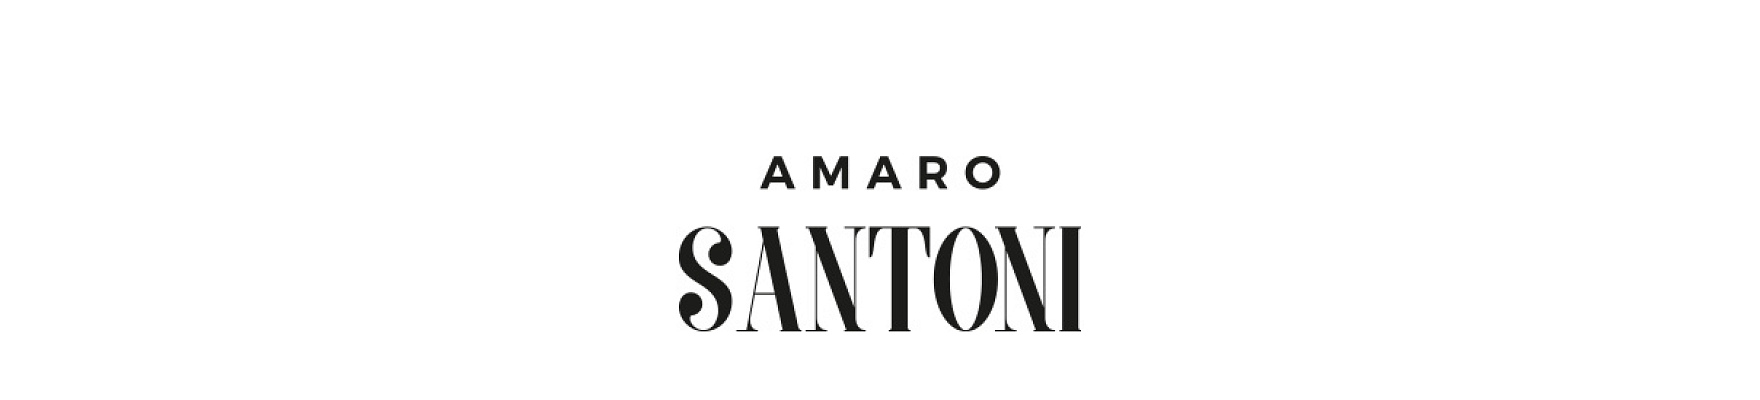 Santoni Amaro